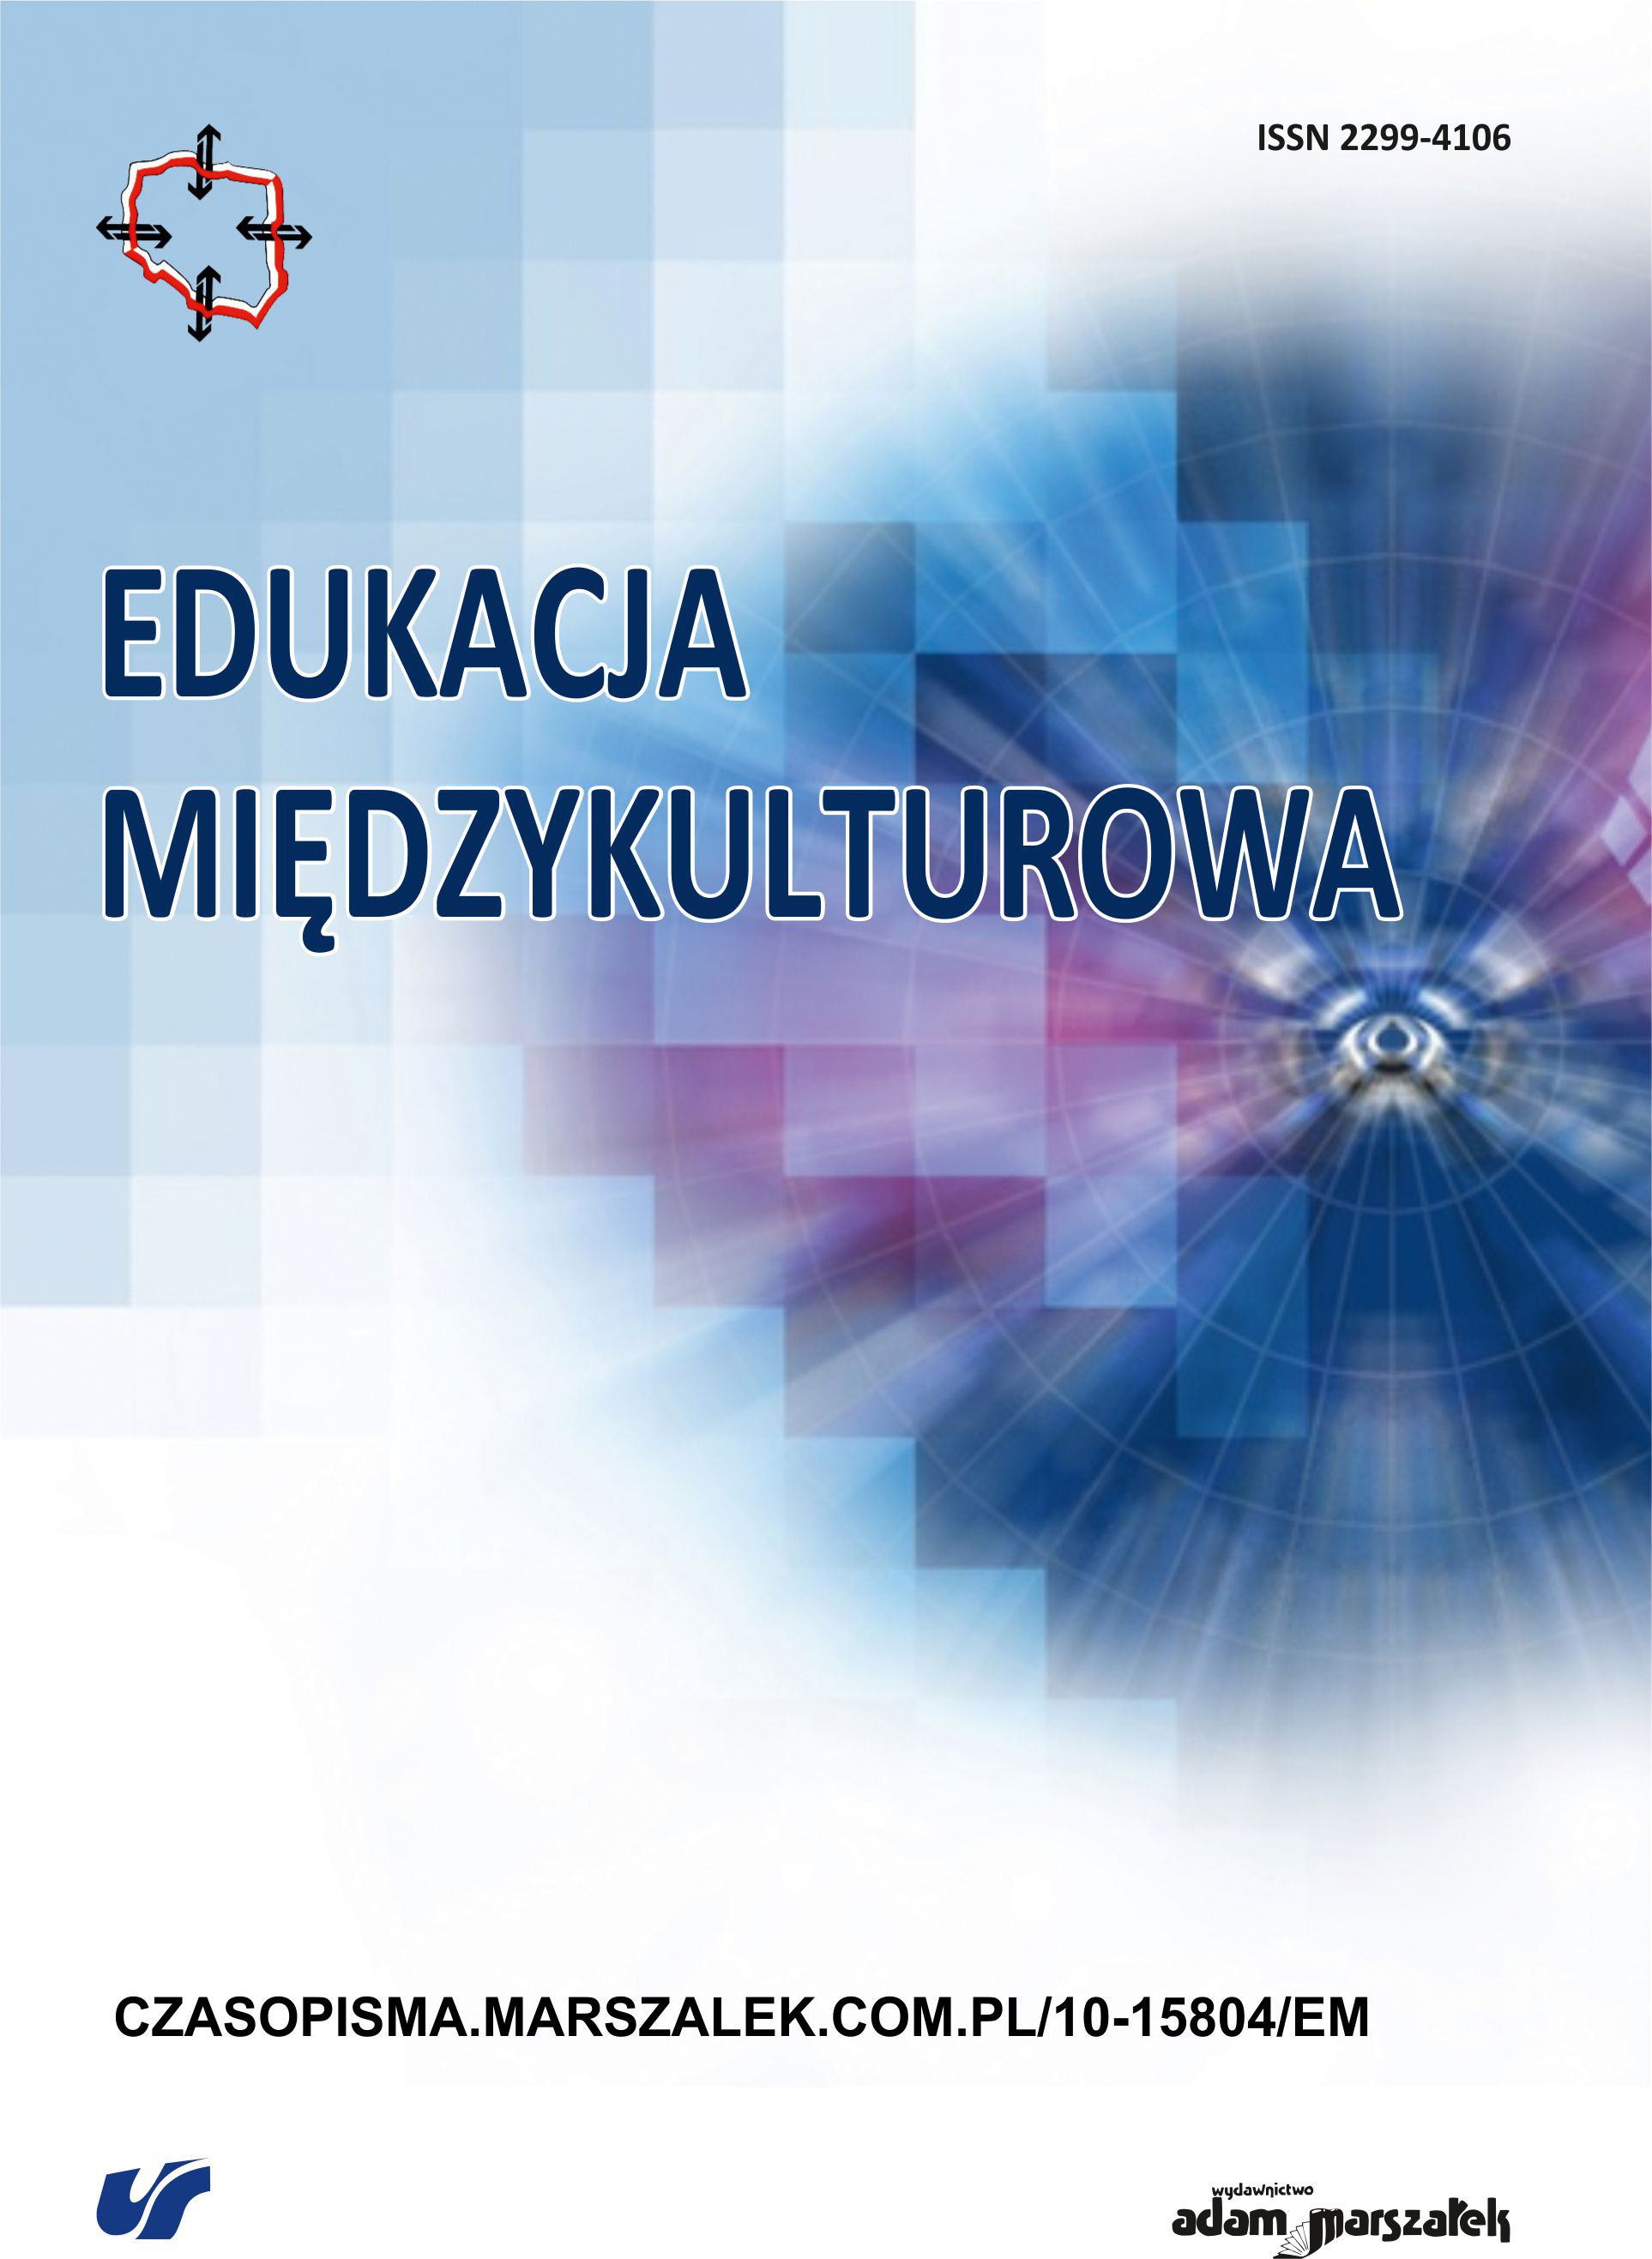 Edukacja seksualna w Polsce i systemach edukacyjnych wybranych krajów – modelowe rozwiązania i międzynarodowe inicjatywy